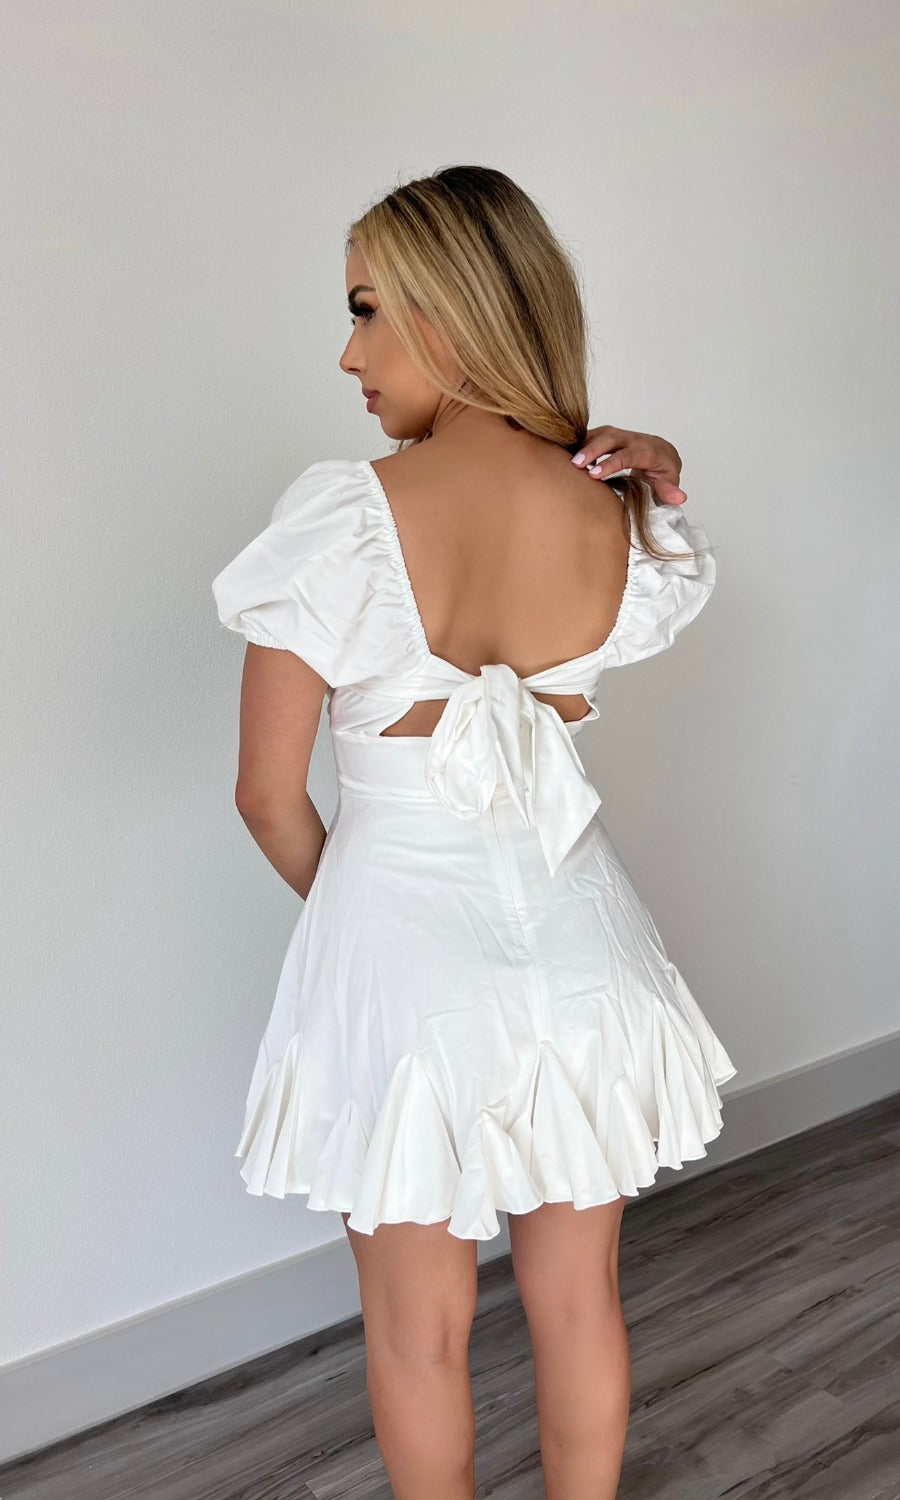 Little Miss Ruffled Dress (White)